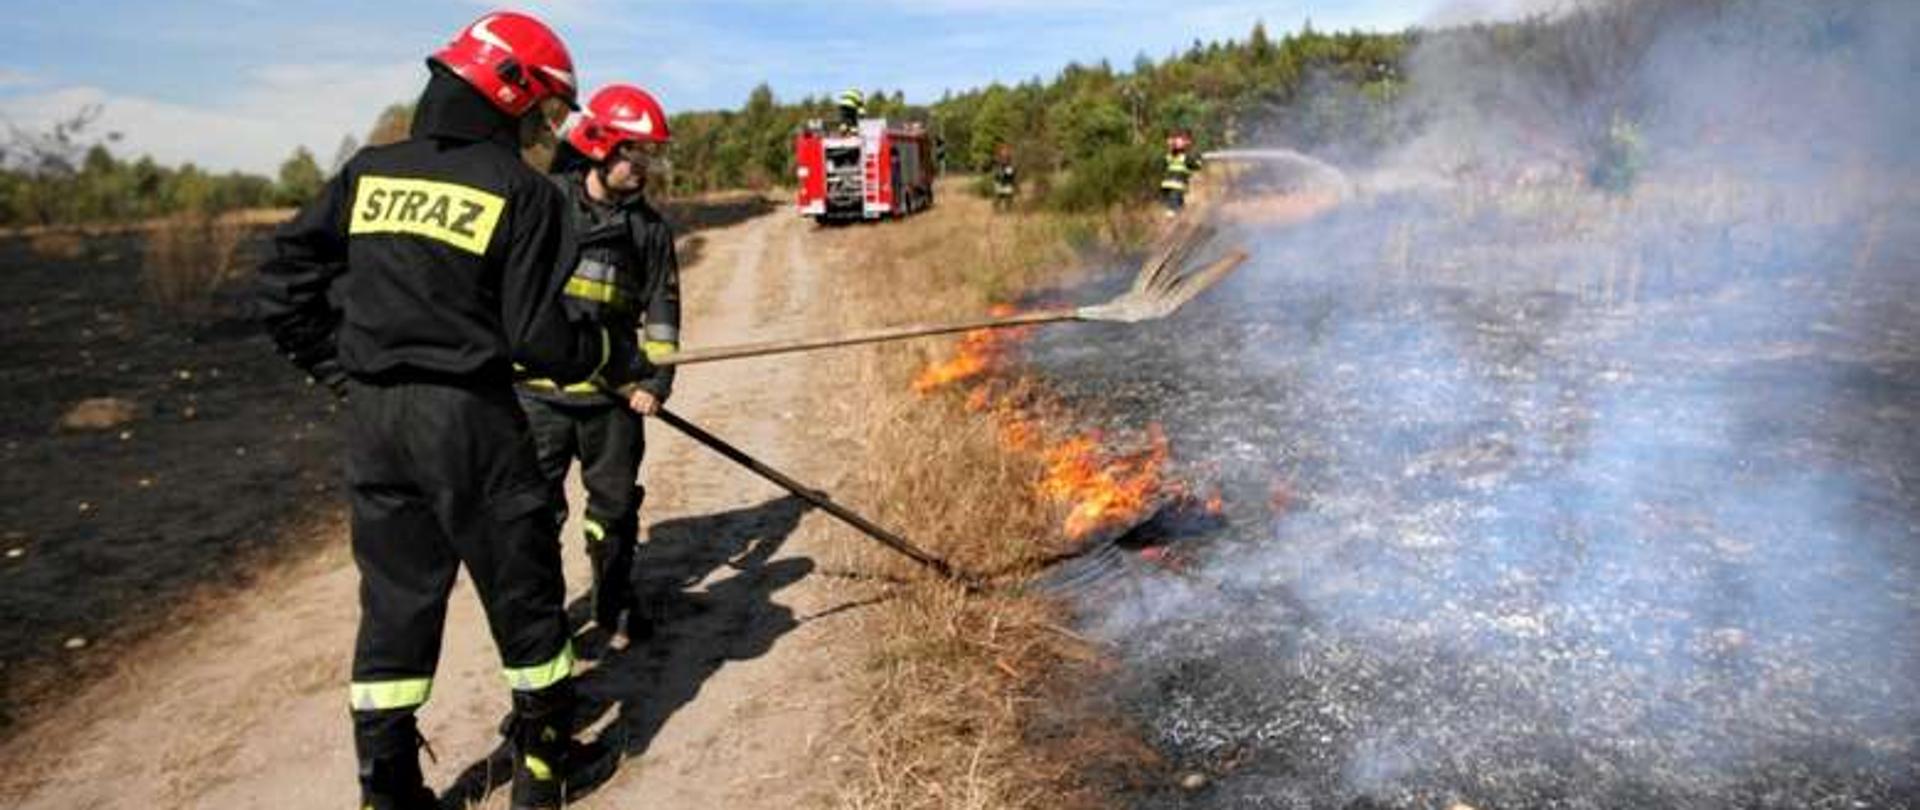 .
Strażacy gaszą pożar traw